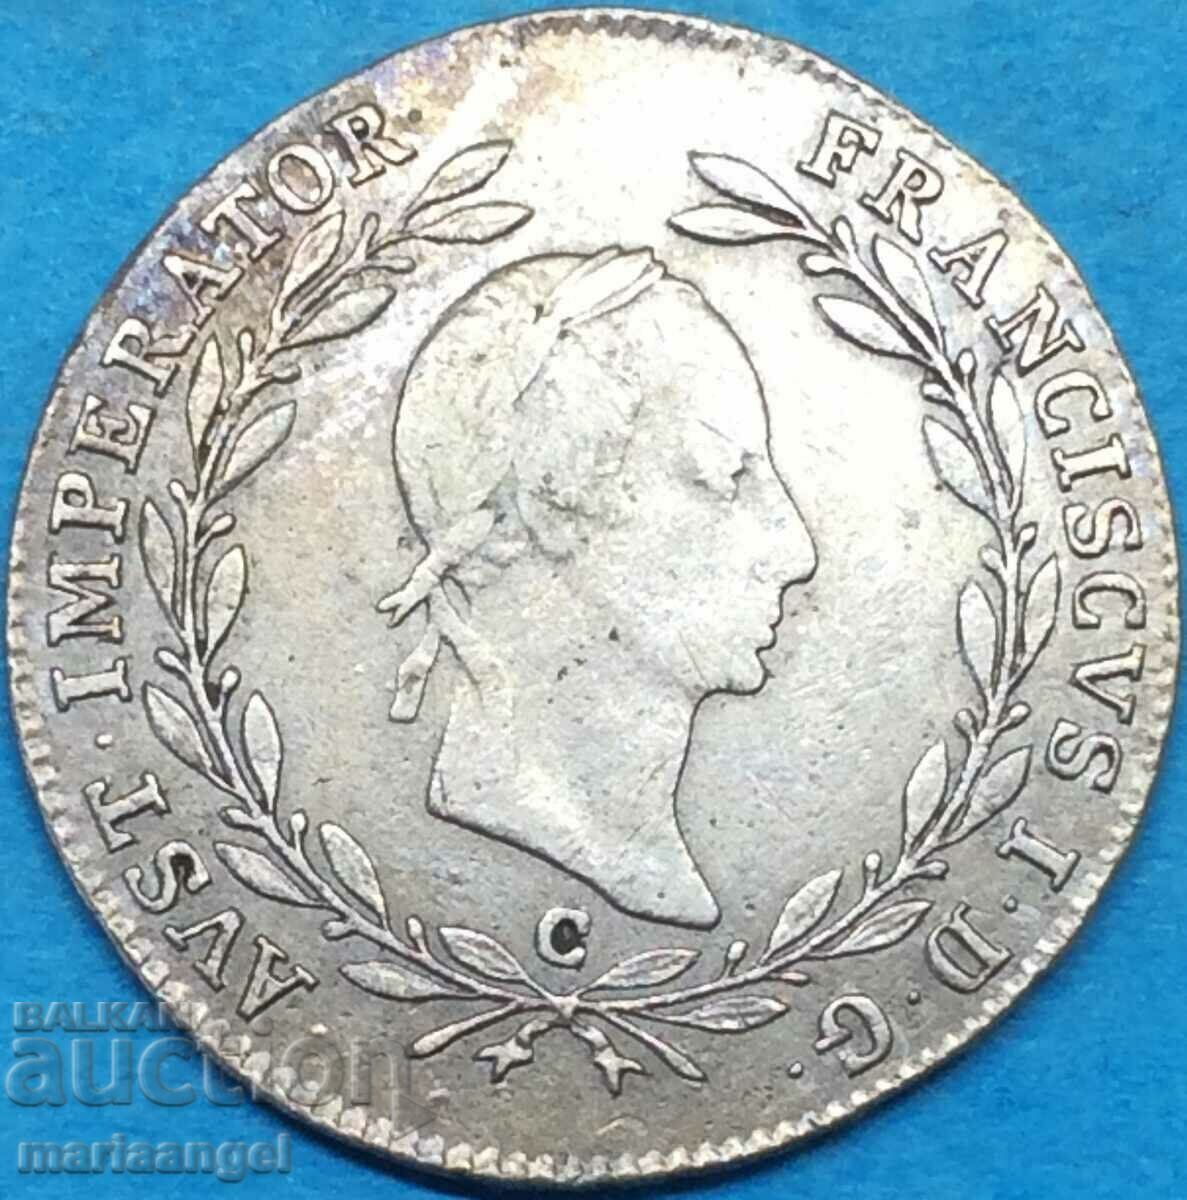 20 Kreuzer 1830 Austria C - Prague silver - rare